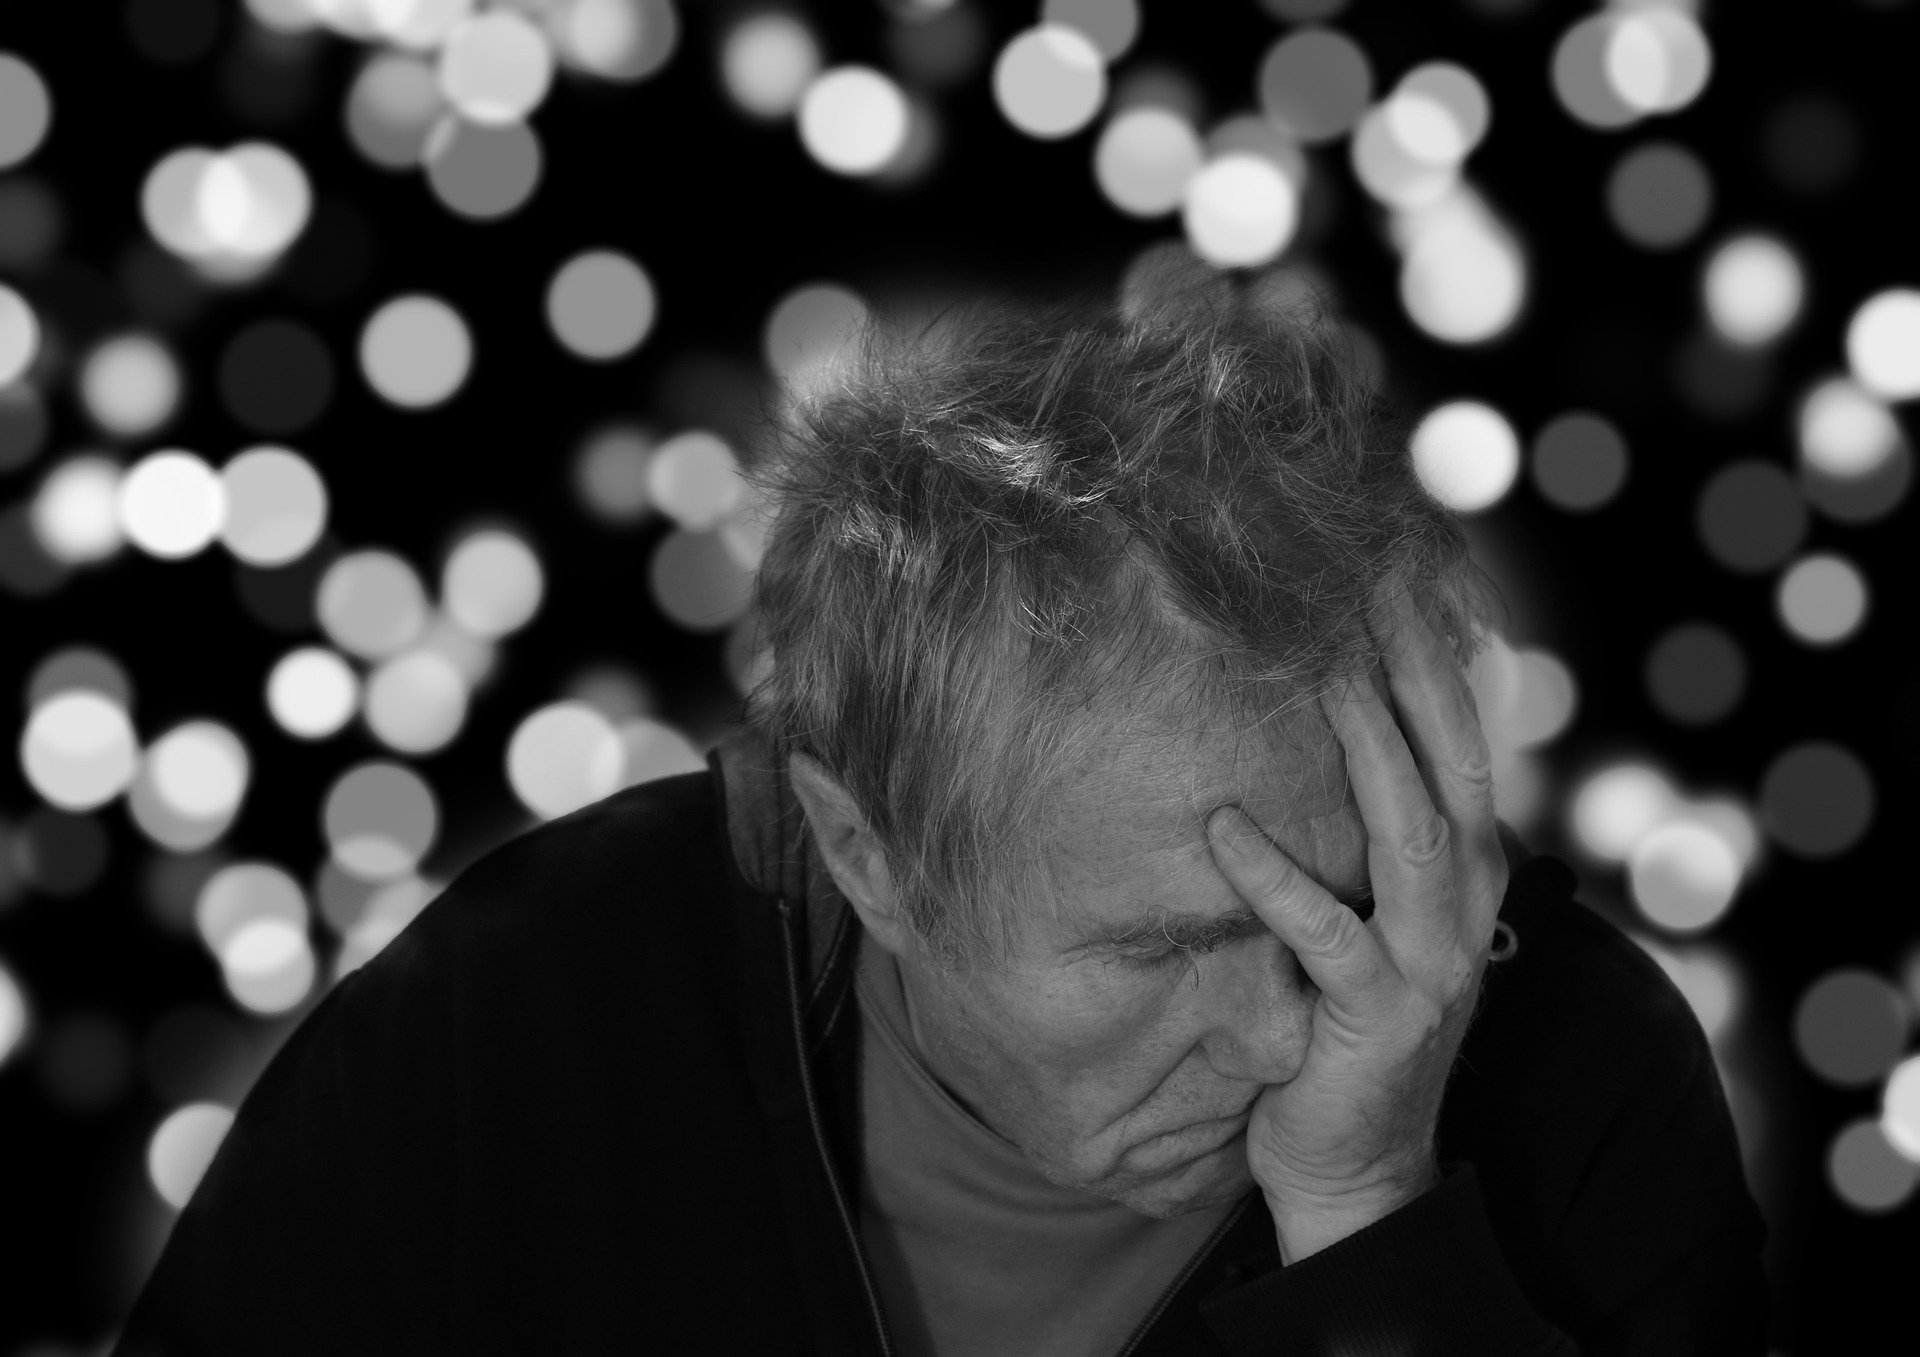 Maladia Alzheimer: Test cu imagini pe smartphone sau tabletă